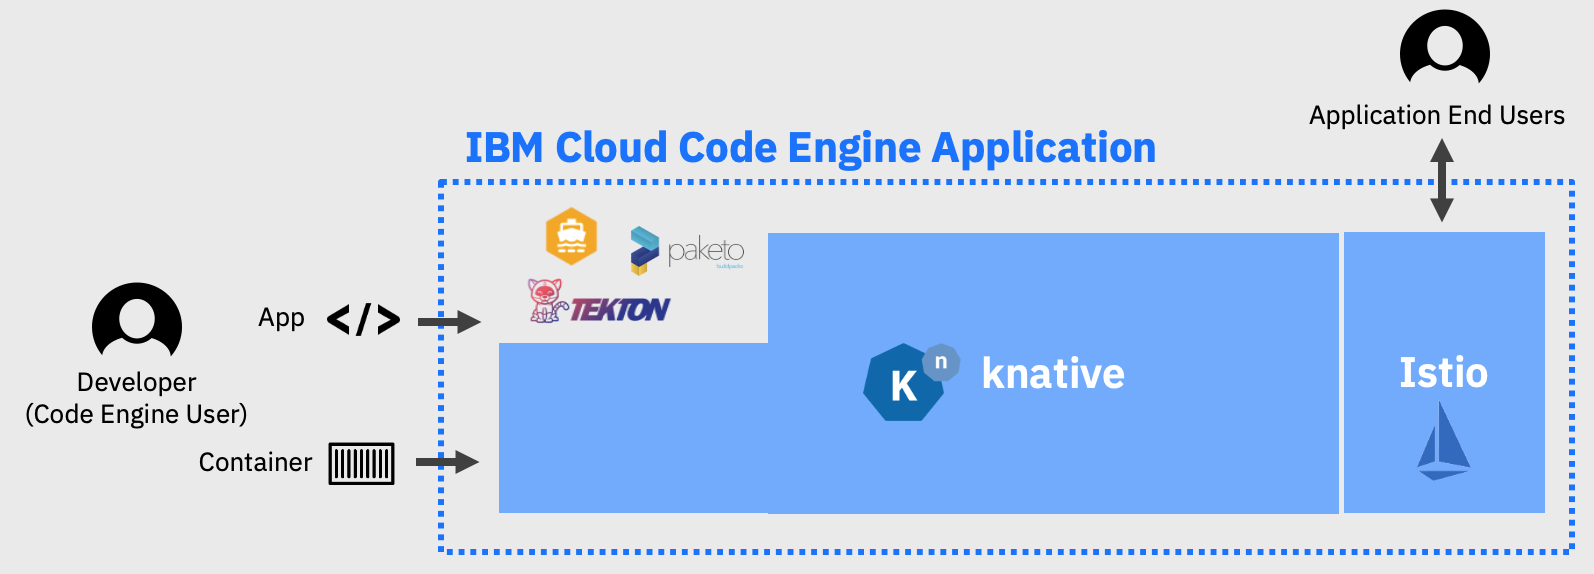 IBM introduce IBM Cloud Code Engine, disponible de forma general y diseñado para ayudar a los desarrolladores de cualquier industria